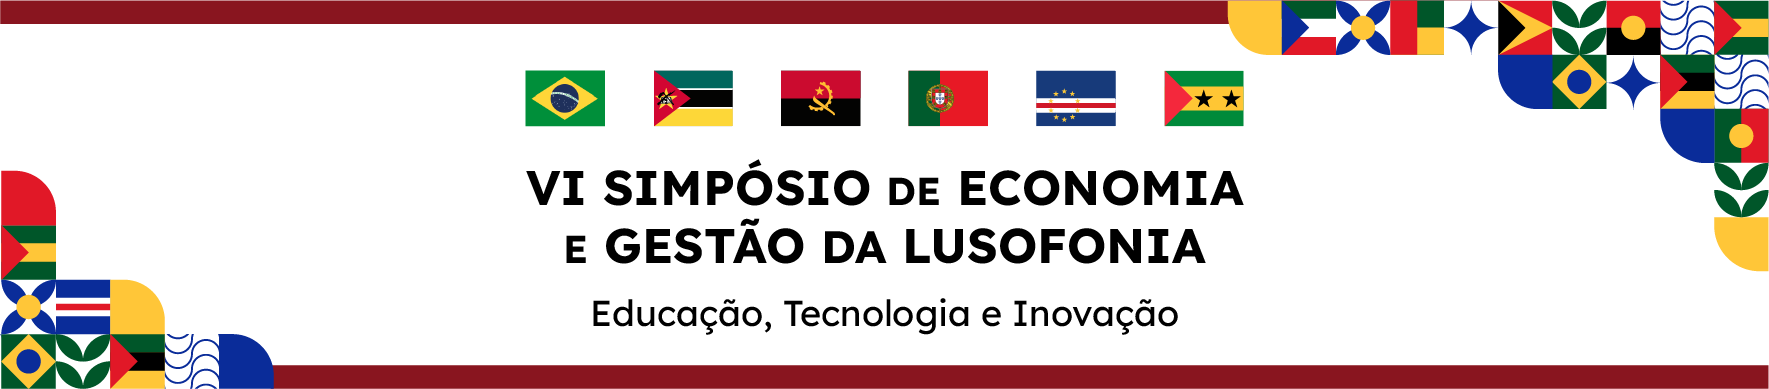 VI simpósio de economia e gestão da lusofonia - educação, tecnologia e inovação